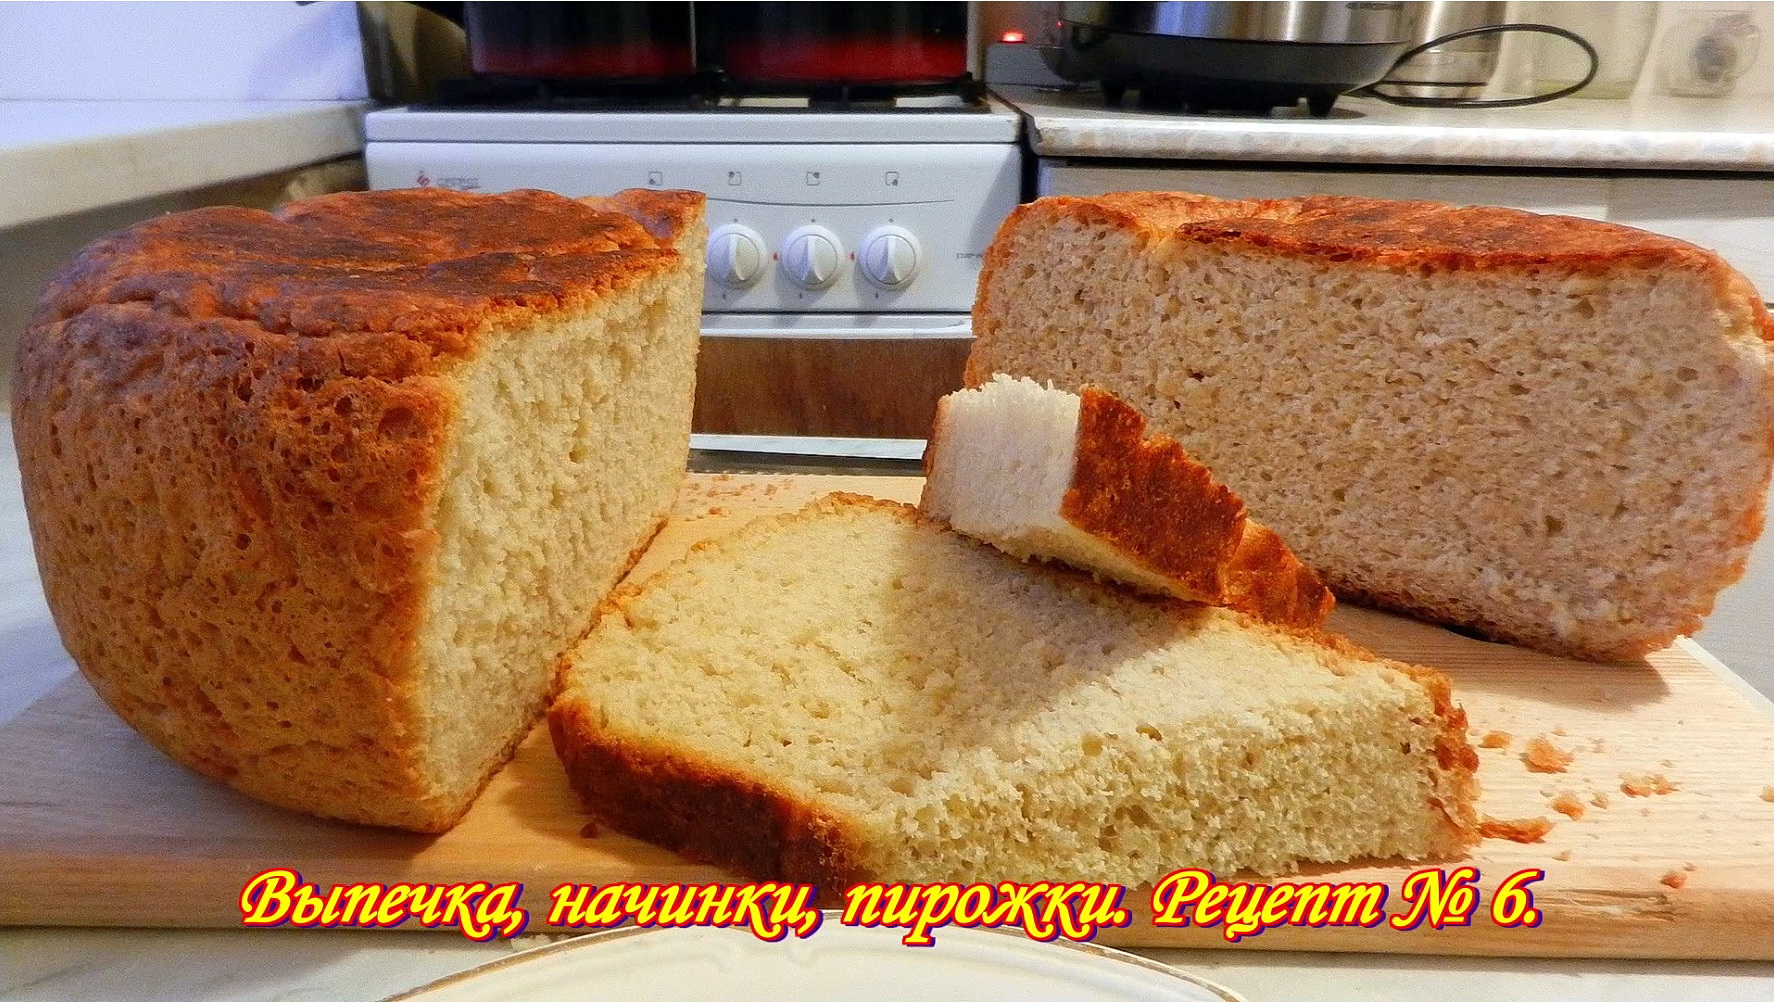 Хлеб.  Простейший рецепт выпечки хлеба в мультиварке. Выпечка, начинки, пирожки. Рецепт №6.